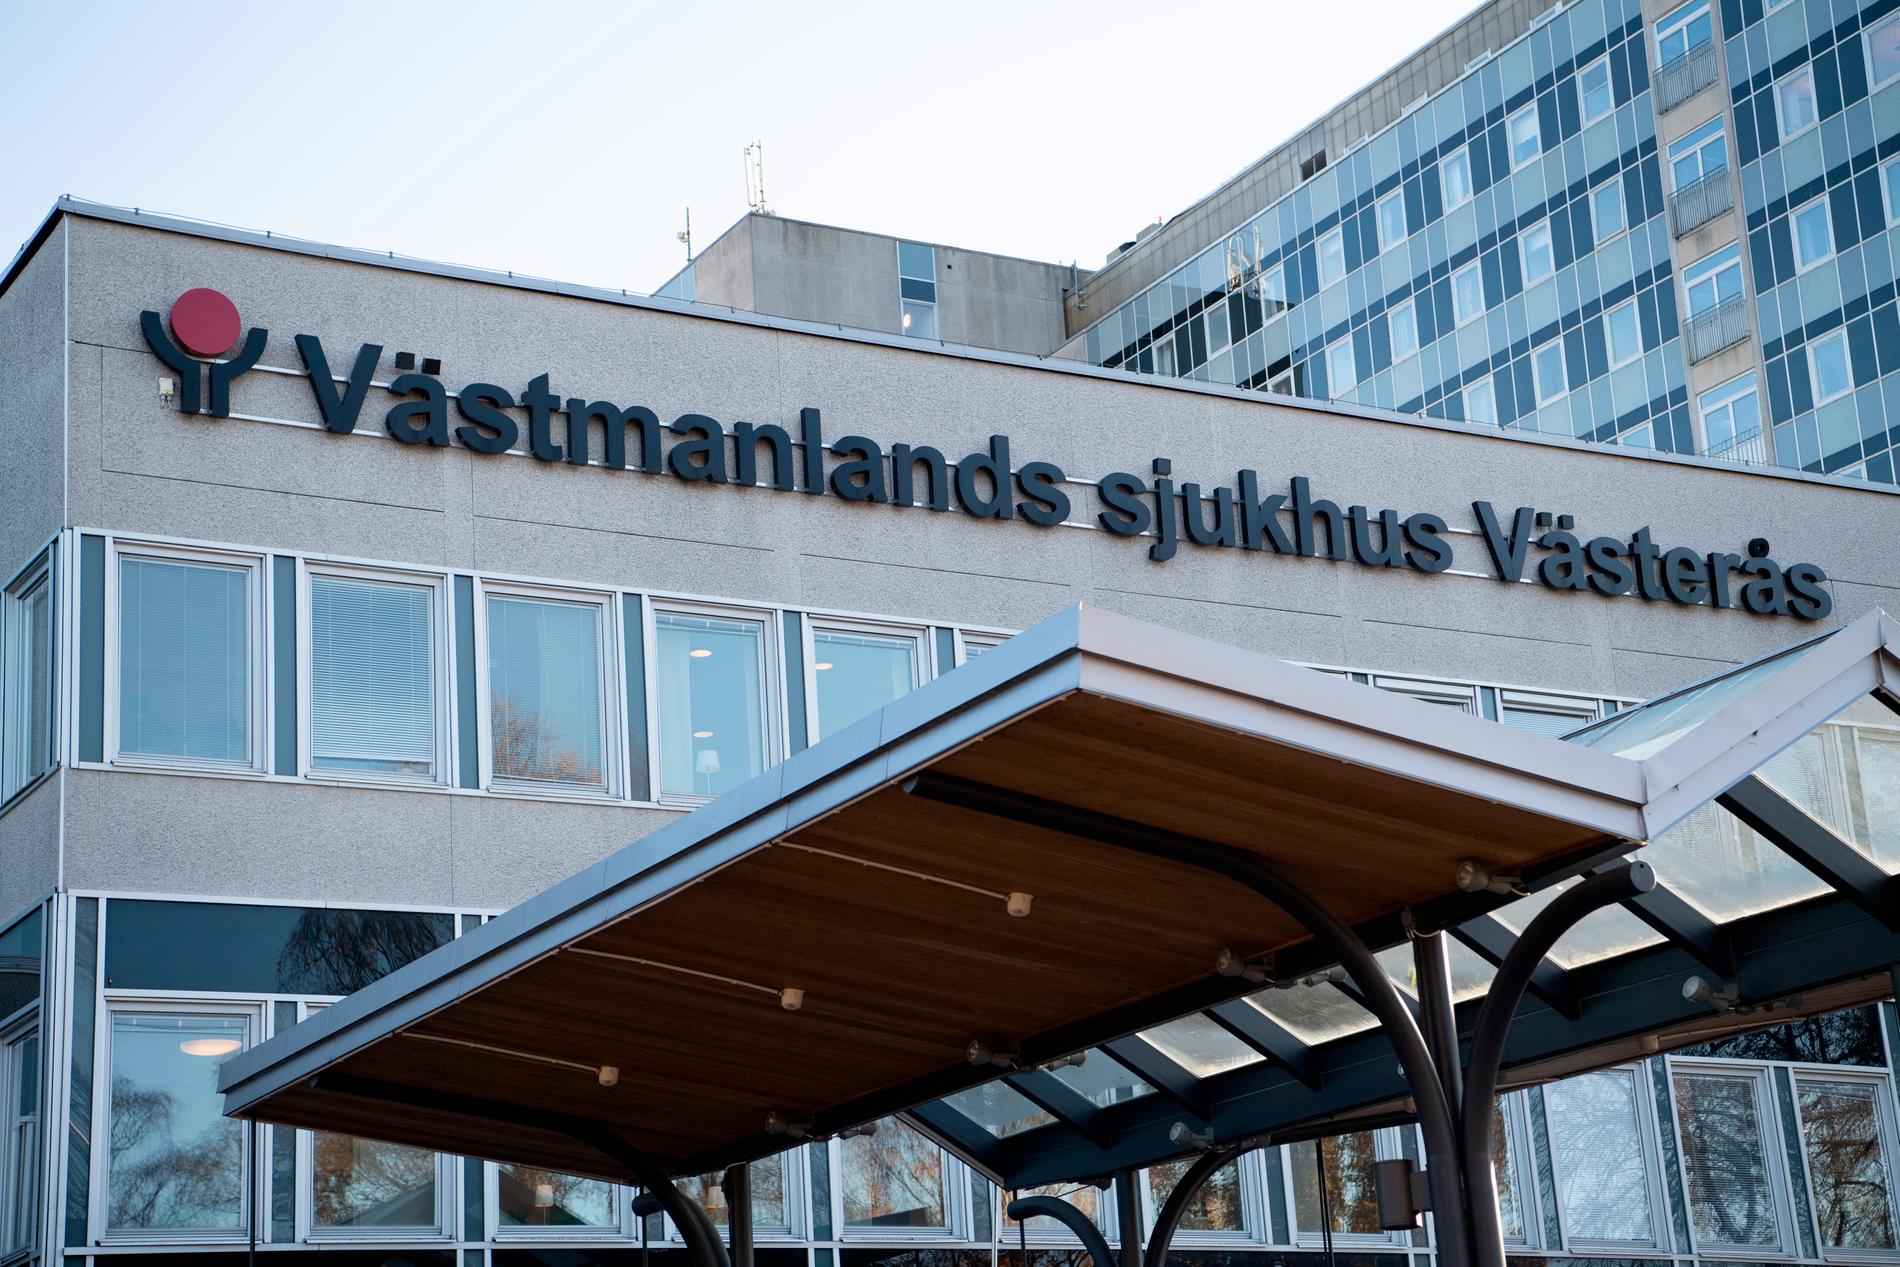 Två män inkom till sjukhuset i Västerås under tisdagskvällen med misstänkta knivskador. Arkivbild.